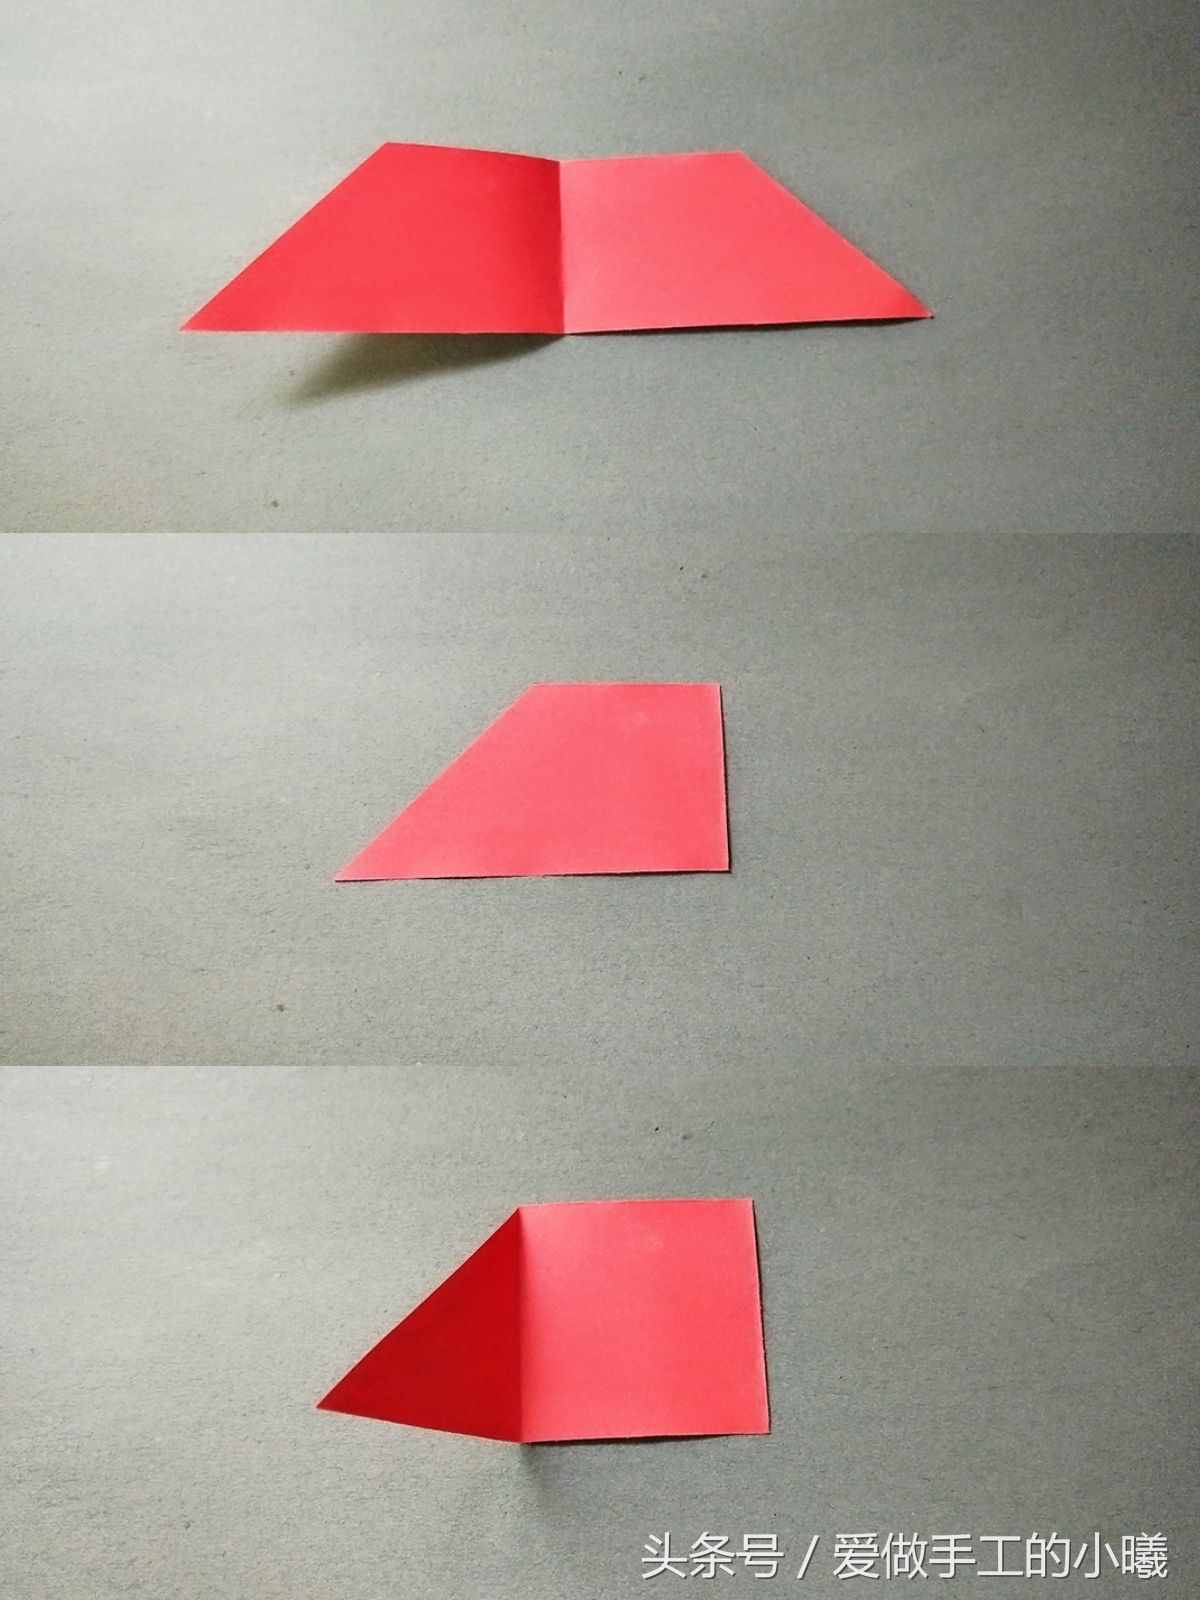 教你用一张纸做一个简易七巧板